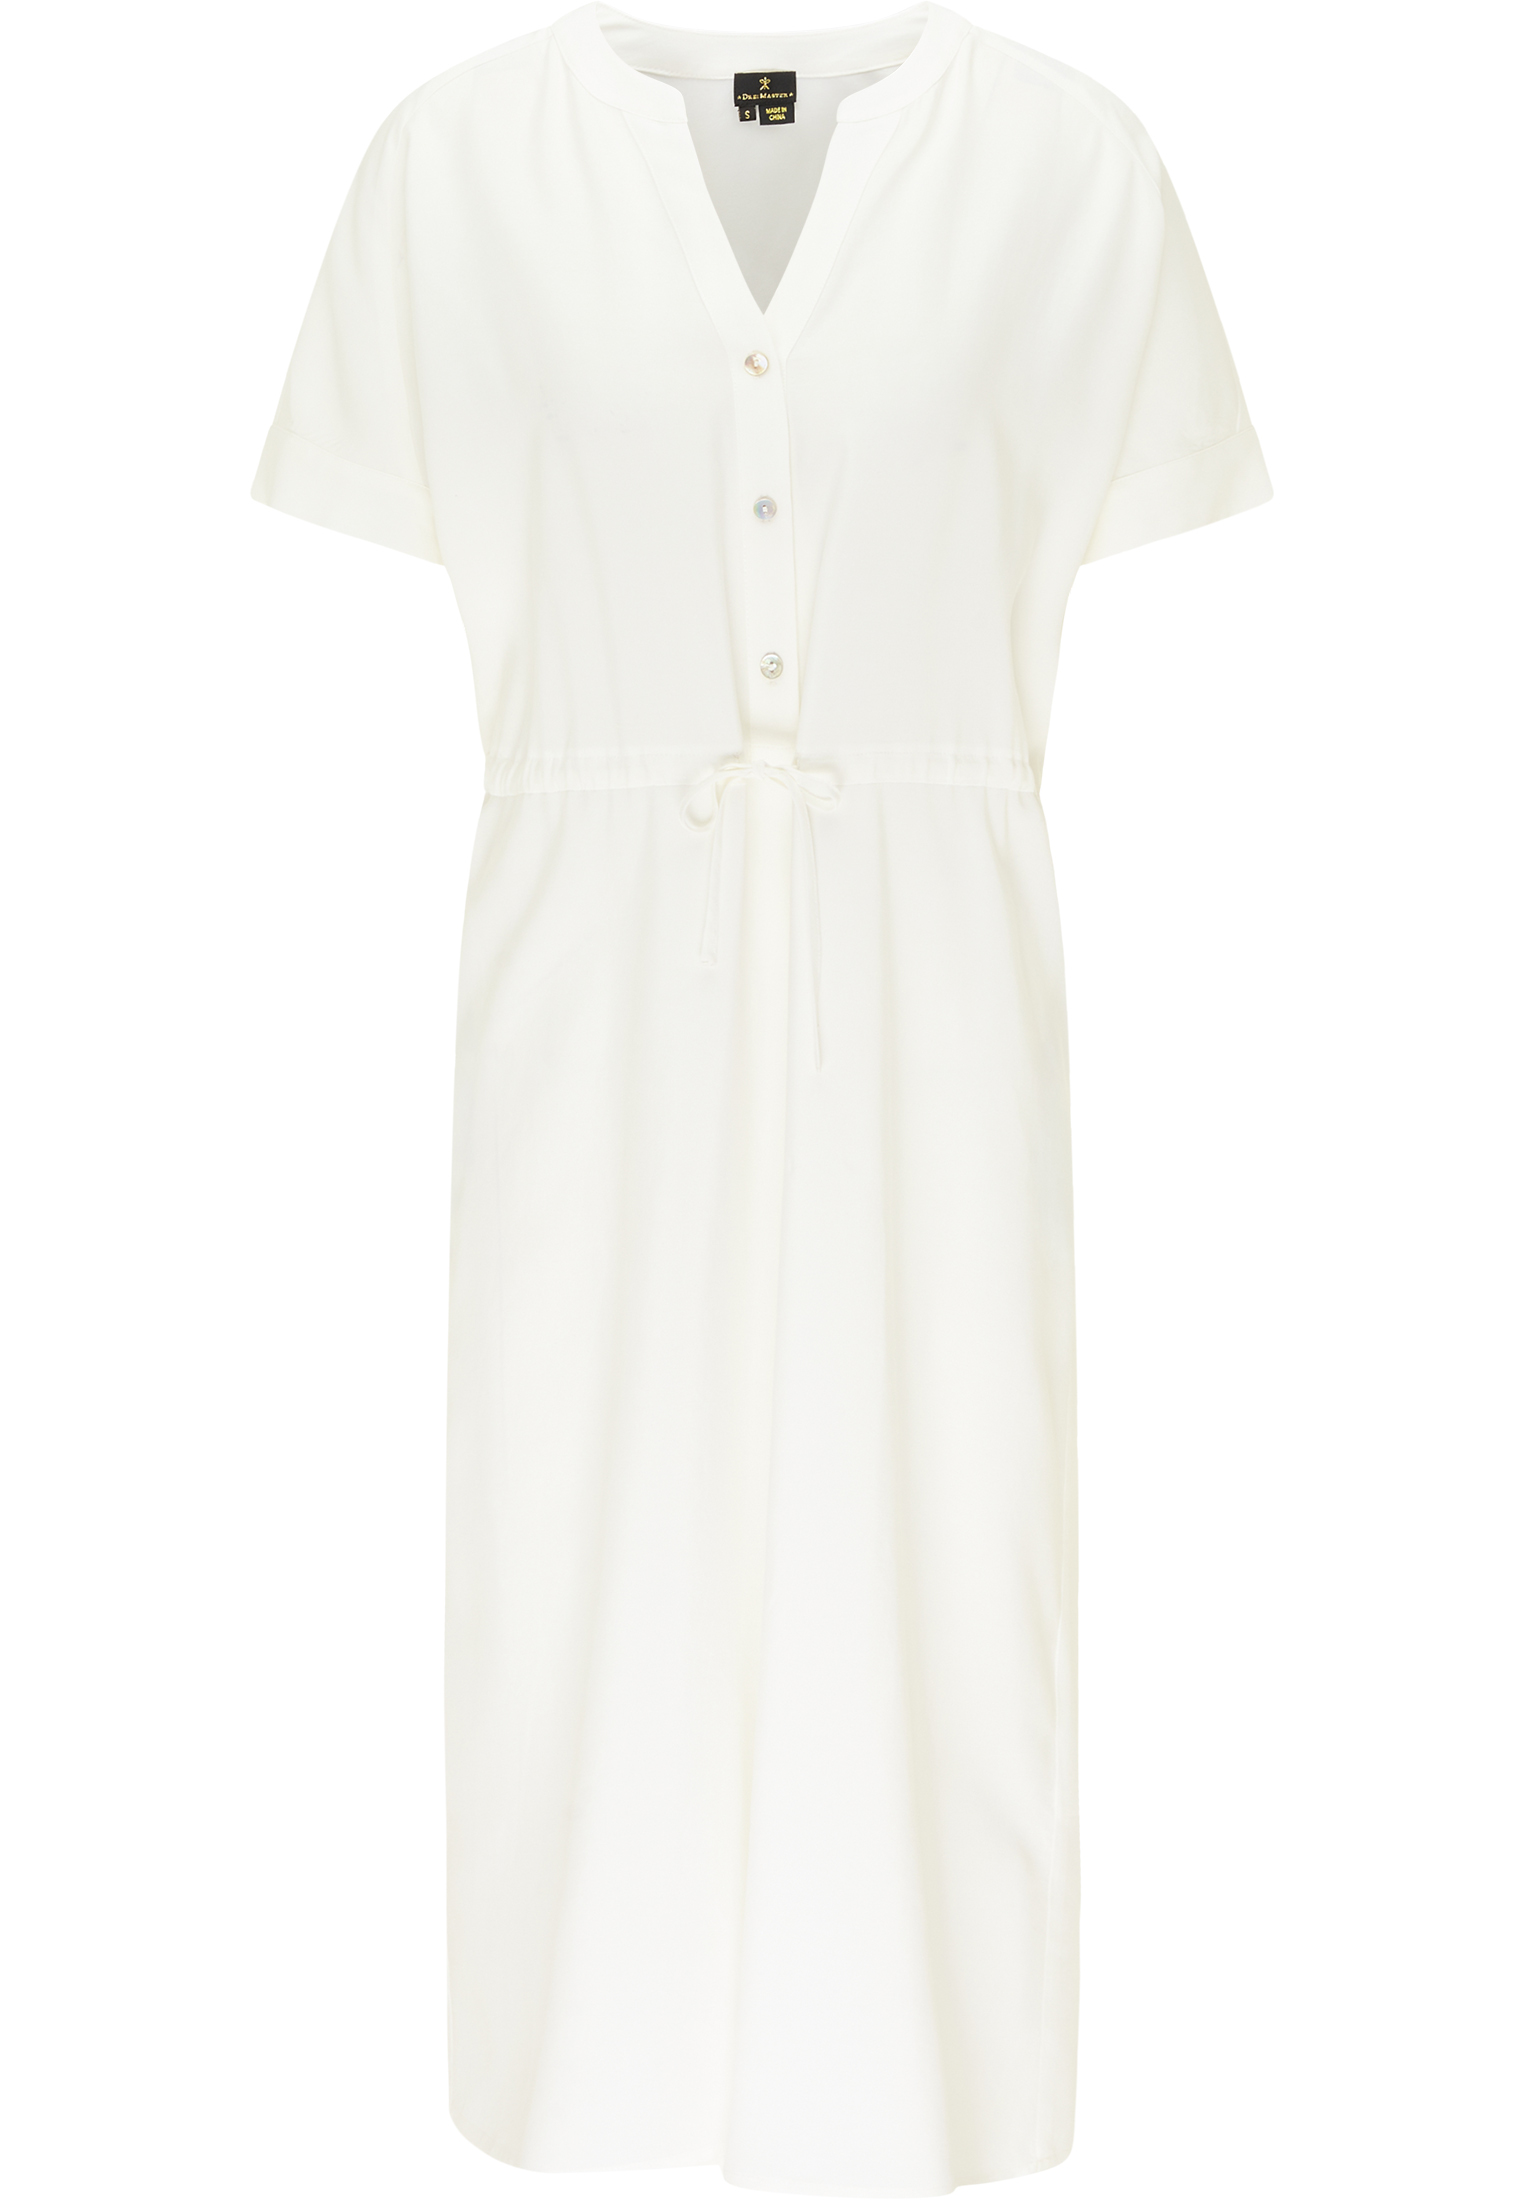 Odzież Sukienki DreiMaster Klassik Sukienka koszulowa w kolorze Białym 